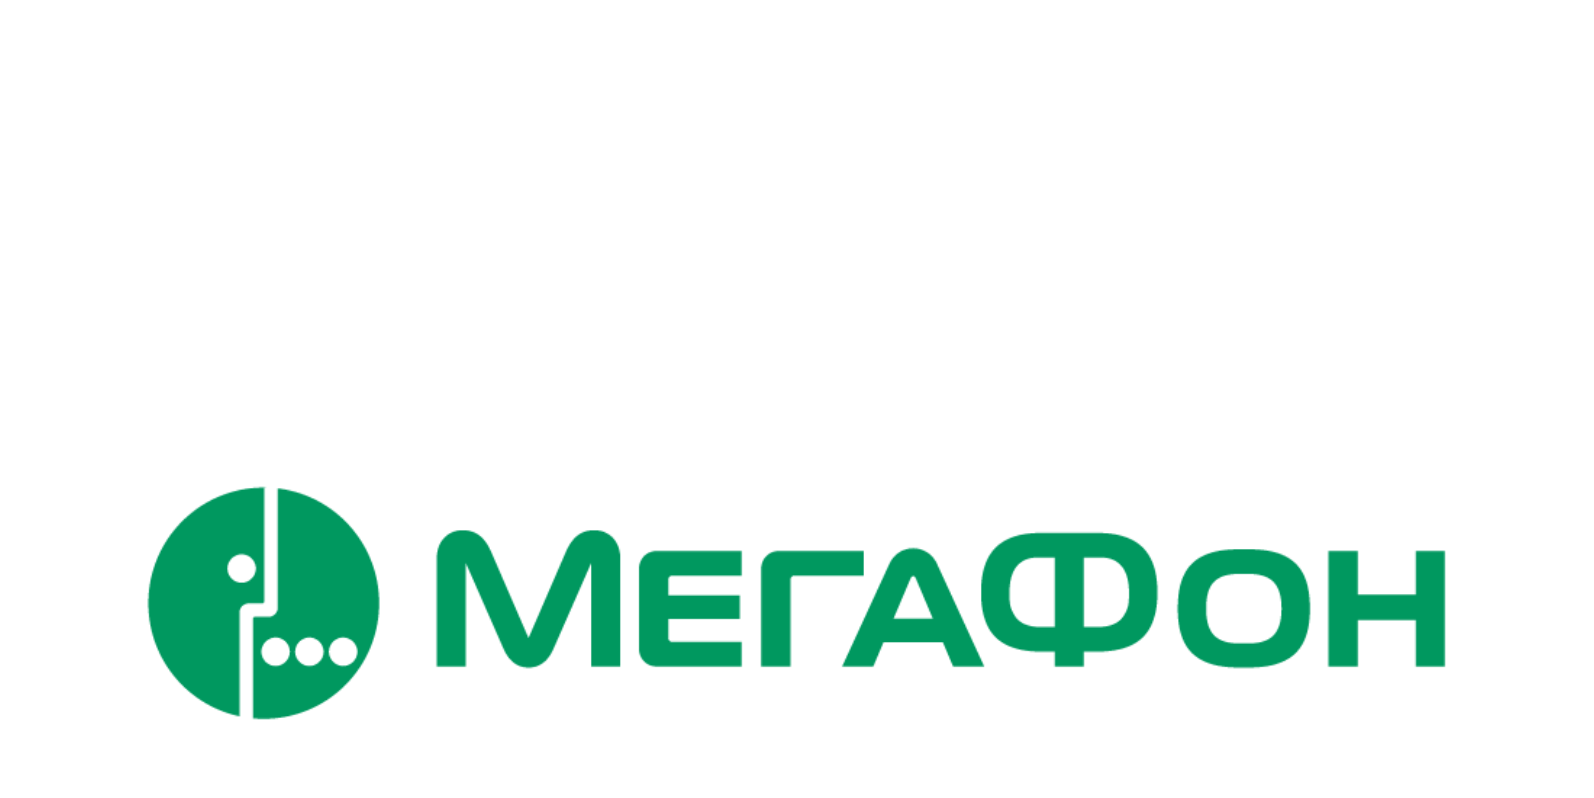 Установить значок мегафона. МЕГАФОН логотип. МЕГАФОН логотип новый. Мегафлот логотип. МЕГАФОН логотип прозрачный.